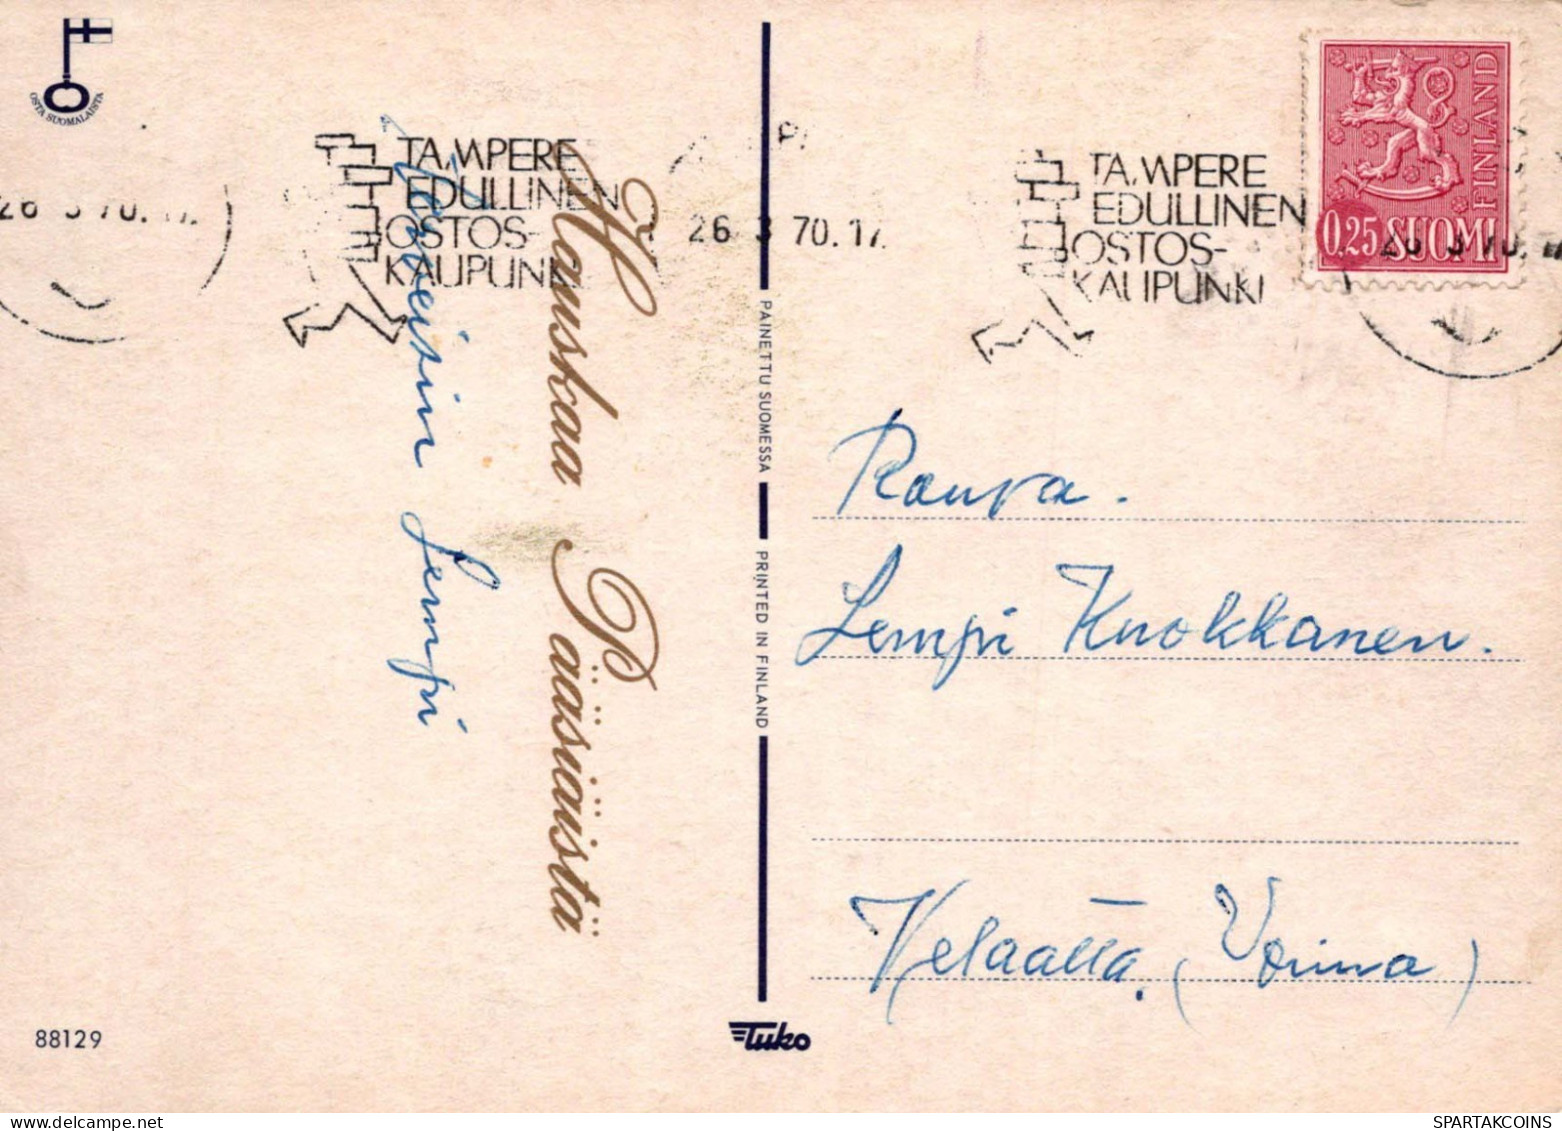 PÂQUES POULET ŒUF Vintage Carte Postale CPSM #PBO694.FR - Easter